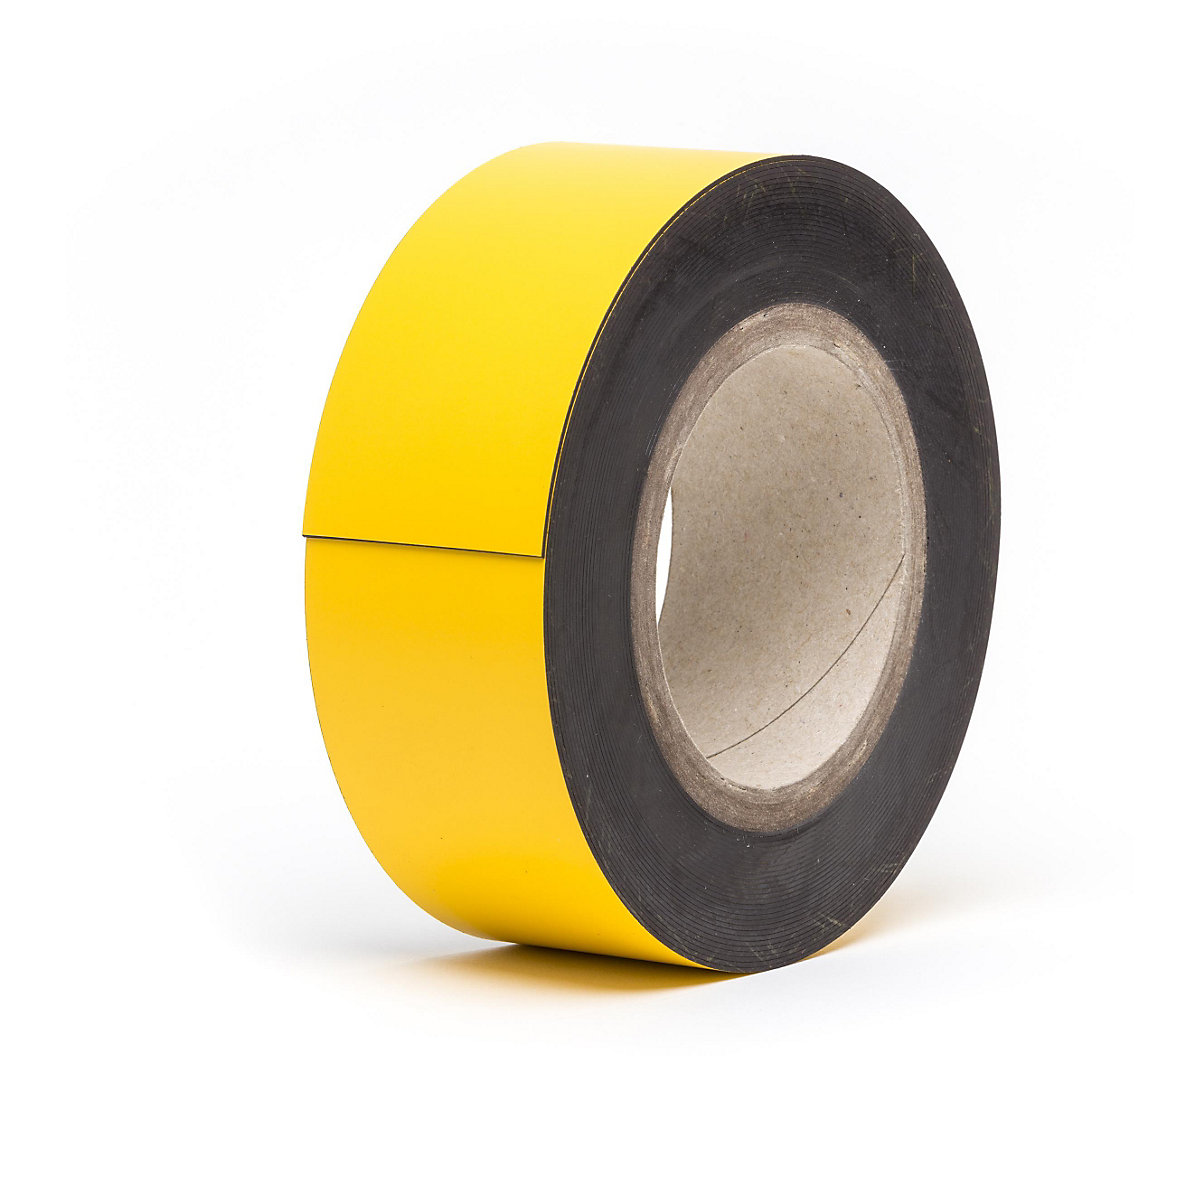 Rótulos magnéticos para almacén, mercancía en rollo, amarillo, altura 60 mm, longitud de rollo 10 m-12